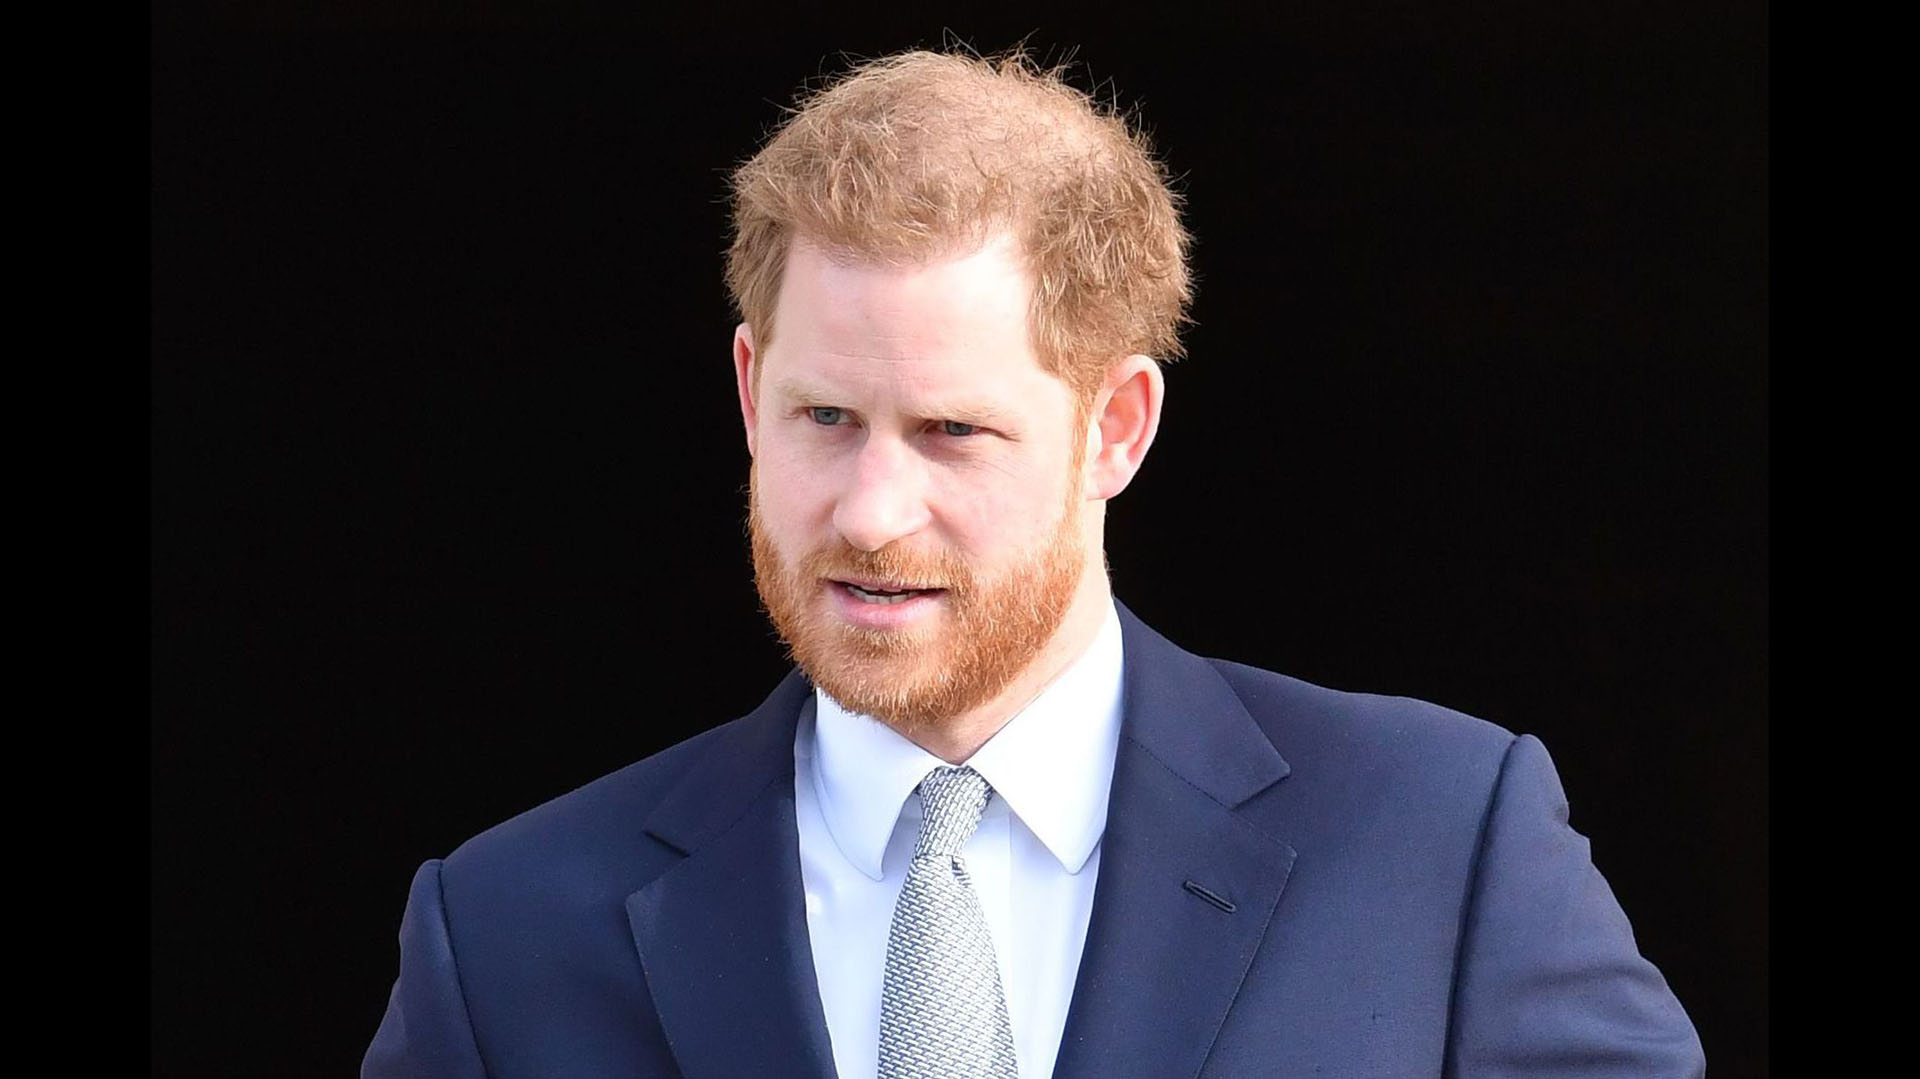 El príncipe Harry renunció a su cargo en la familia real británica el año pasado y se mudó a Los Ángeles junto a su esposa Meghan Markle y su hijo, Archie (Shutterstock)